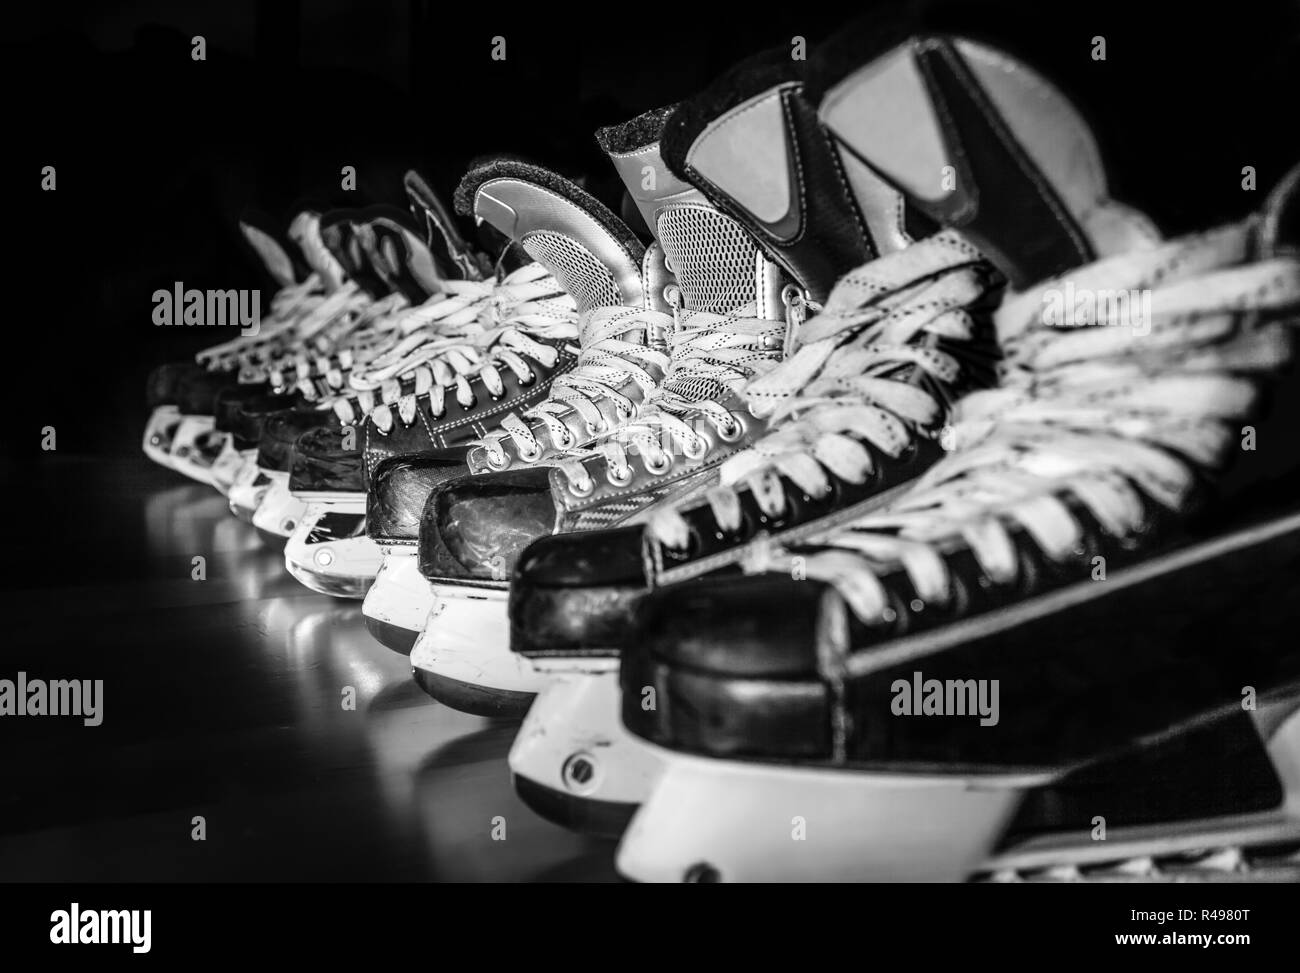 Pairs of ice hockey skates lined up in a dark locker room Stock Photo